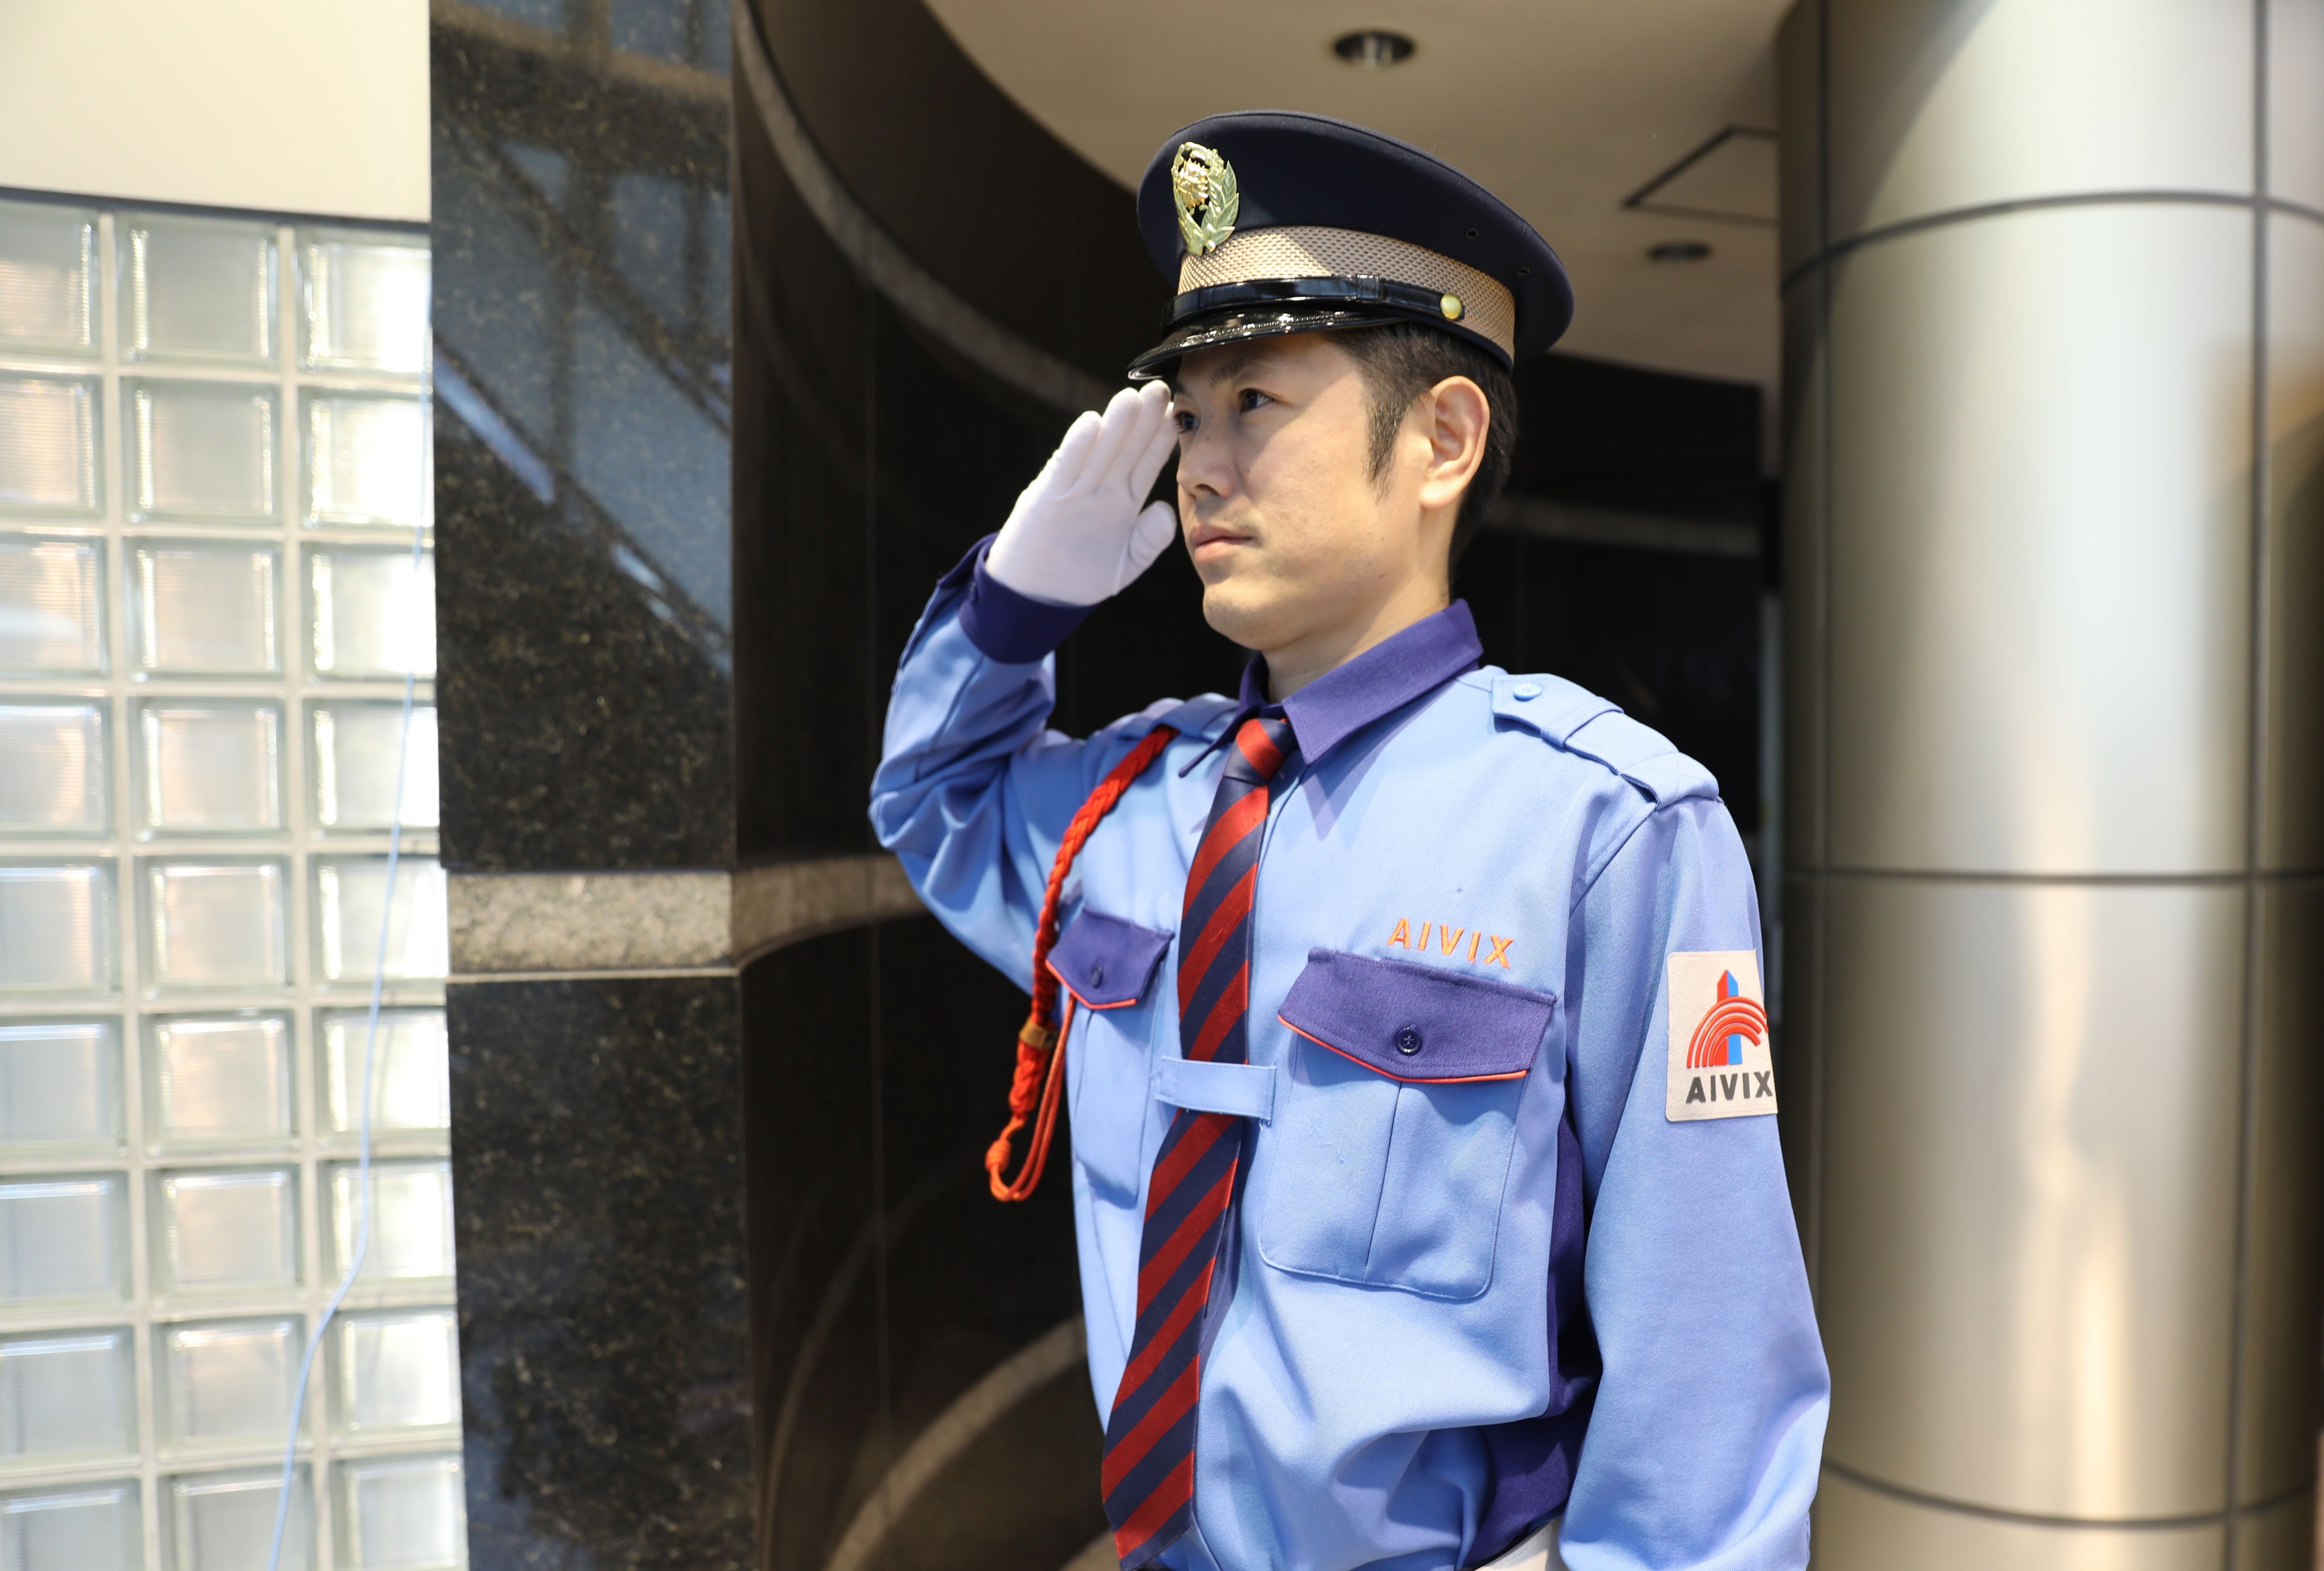 施設警備員 日本原電敦賀発電所 中途採用 採用情報 株式会社アイビックス 安全と快適を生む環境づくり